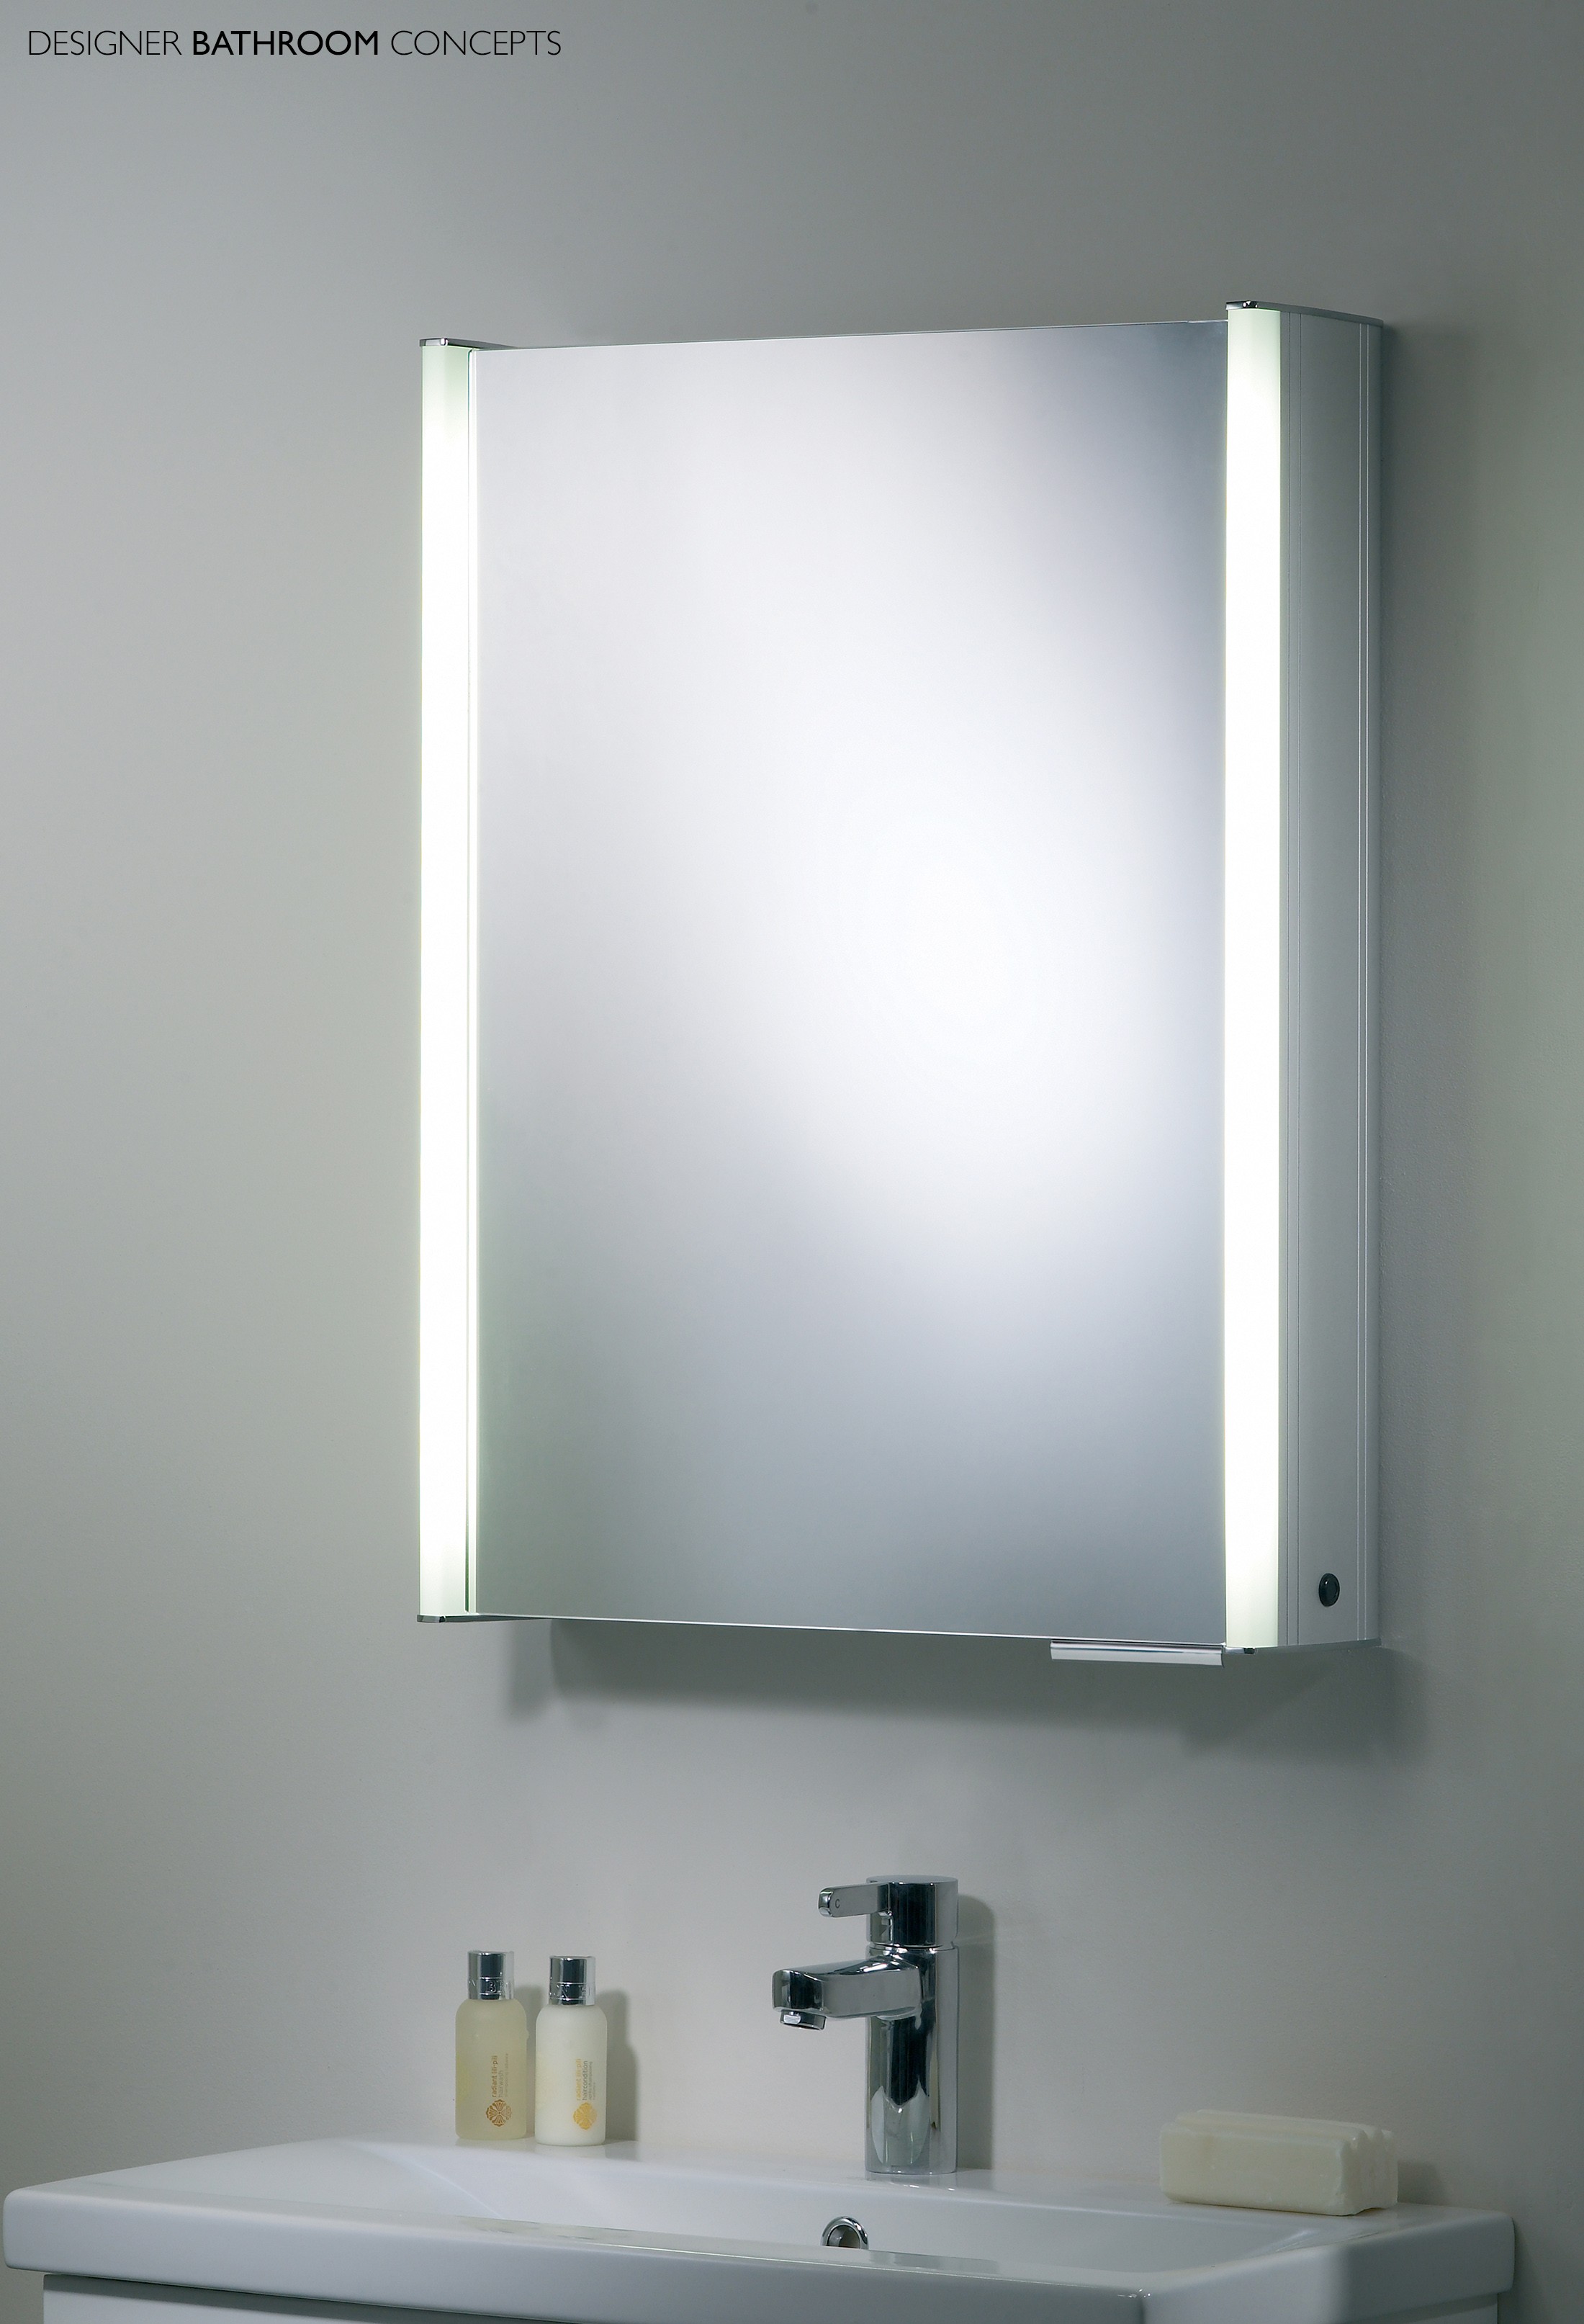 Bathroom mirror cabinets Mirror cabinet for bathroom in the bathroom design in delicious cabinets designs GEWZIOW